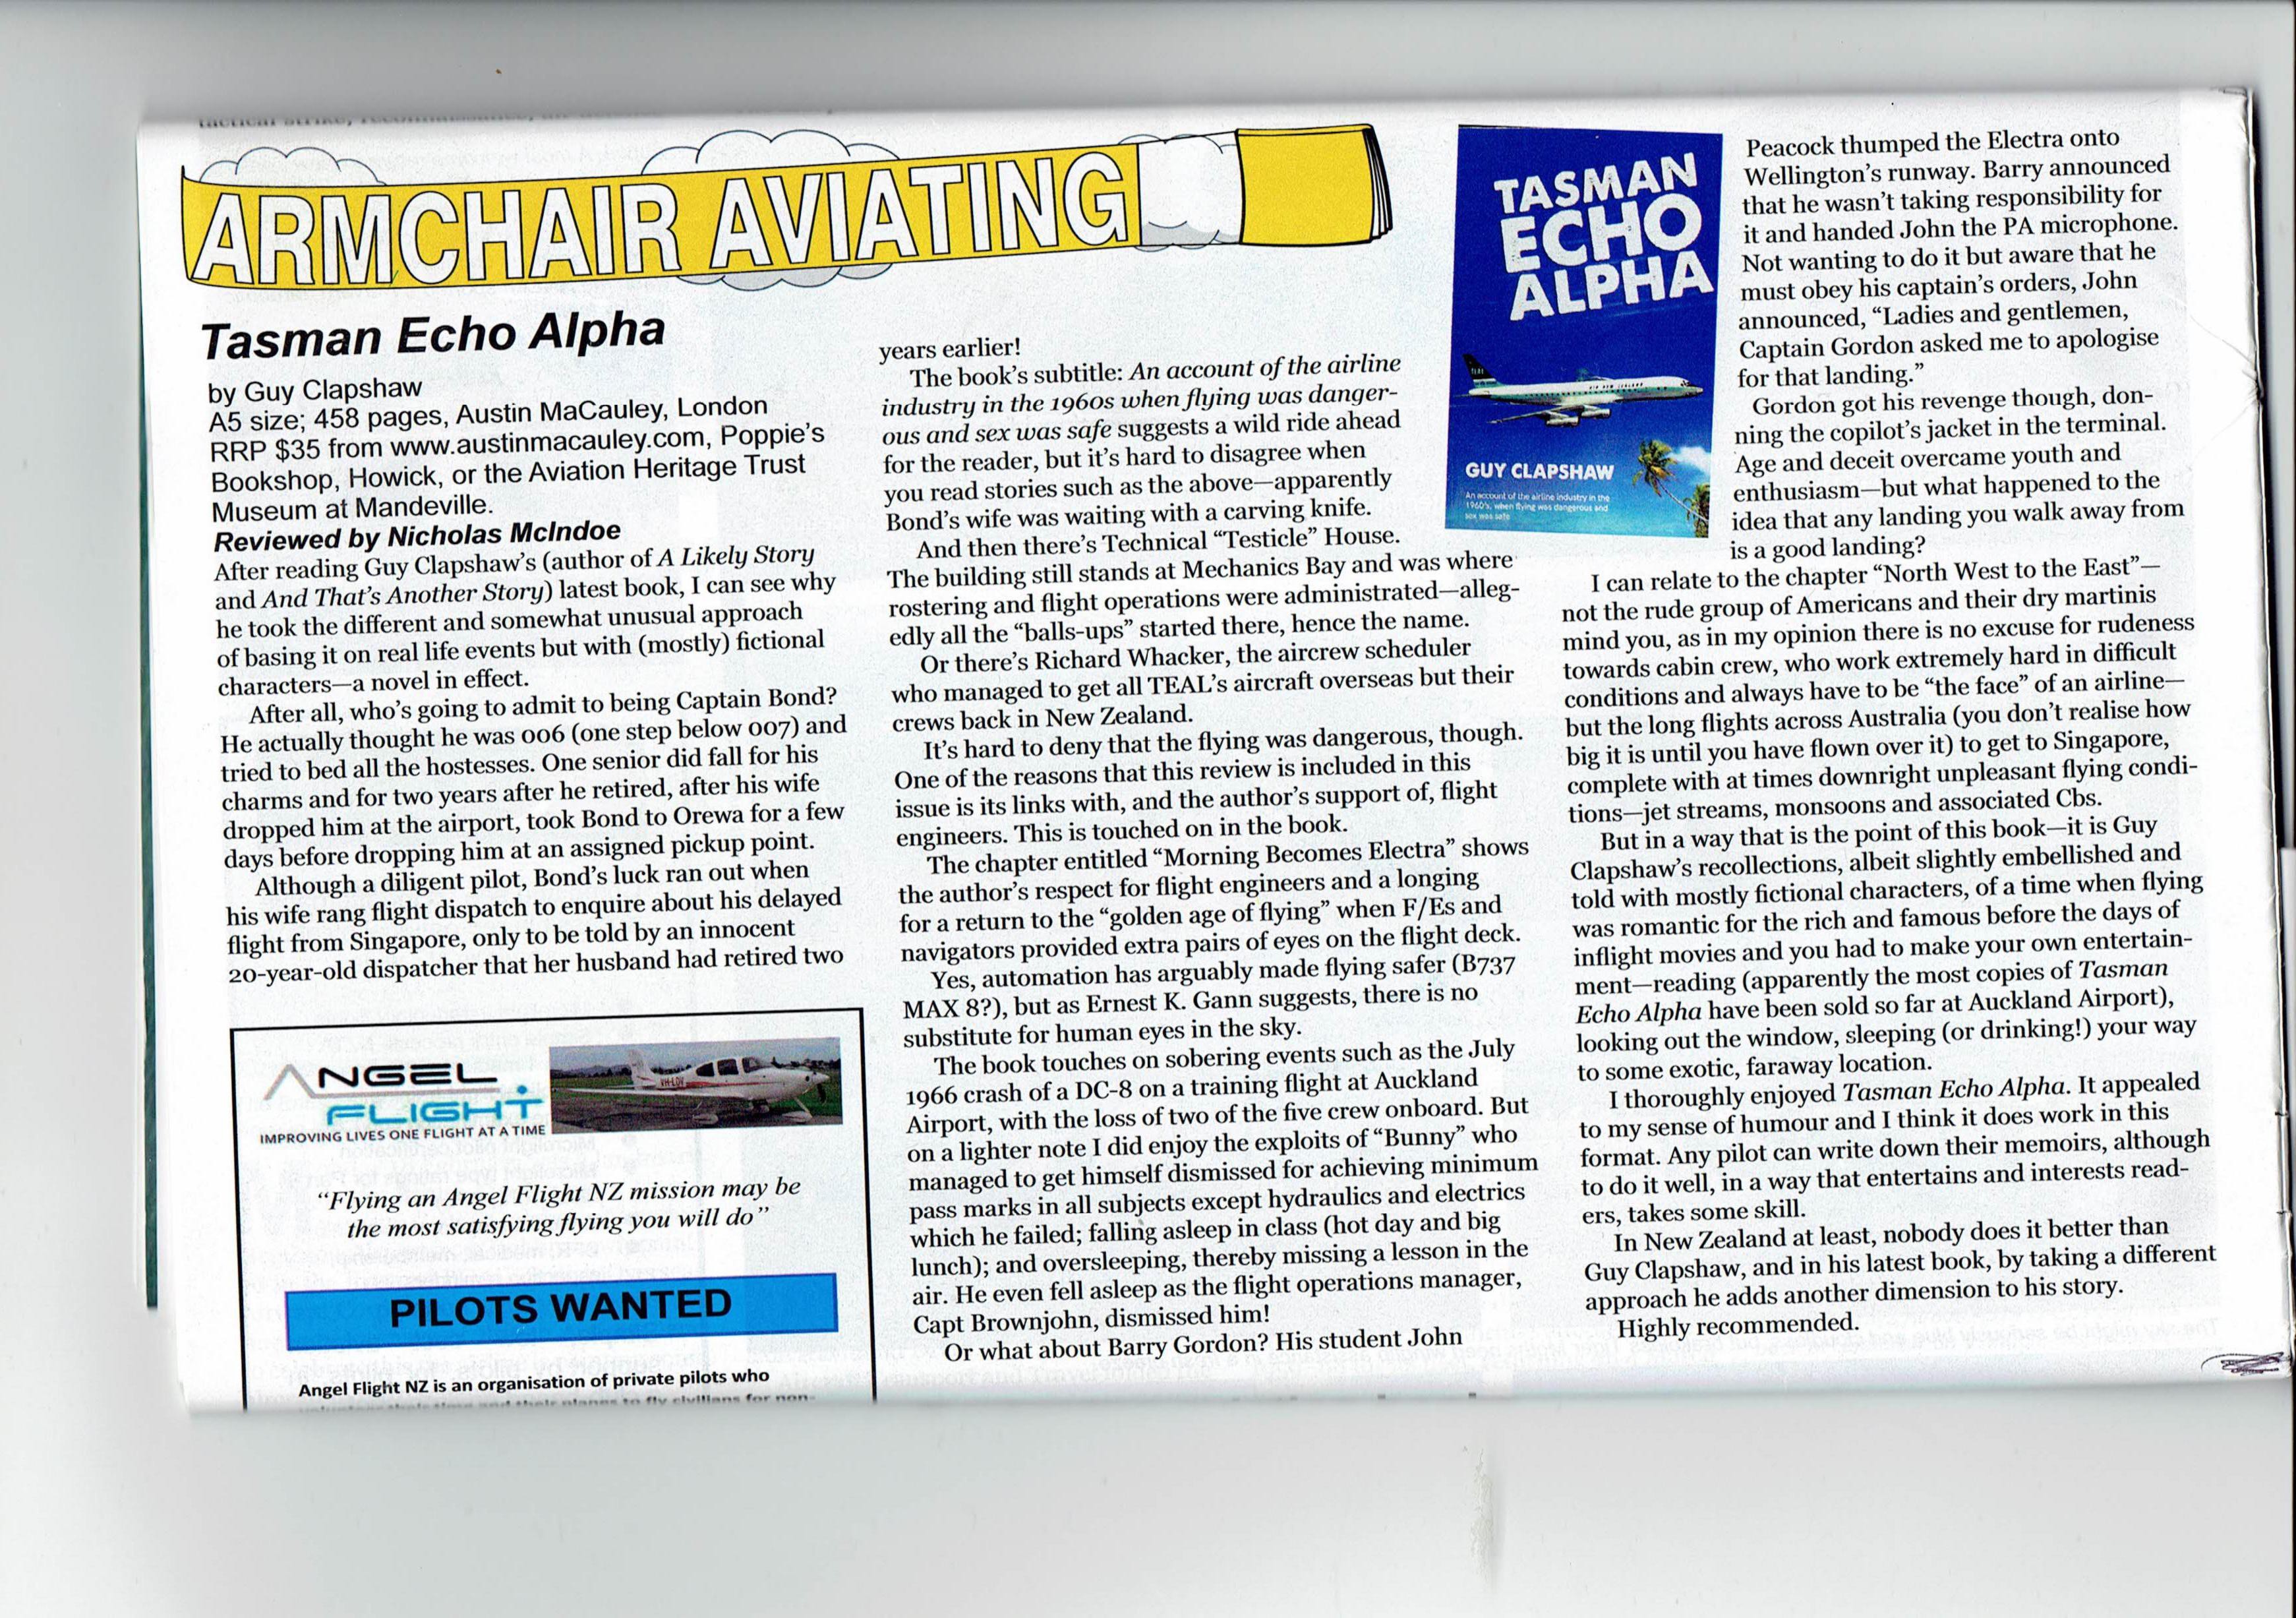 Tasman Echo Alpha by Guy Clapshaw Featured in Aviation News Magazine